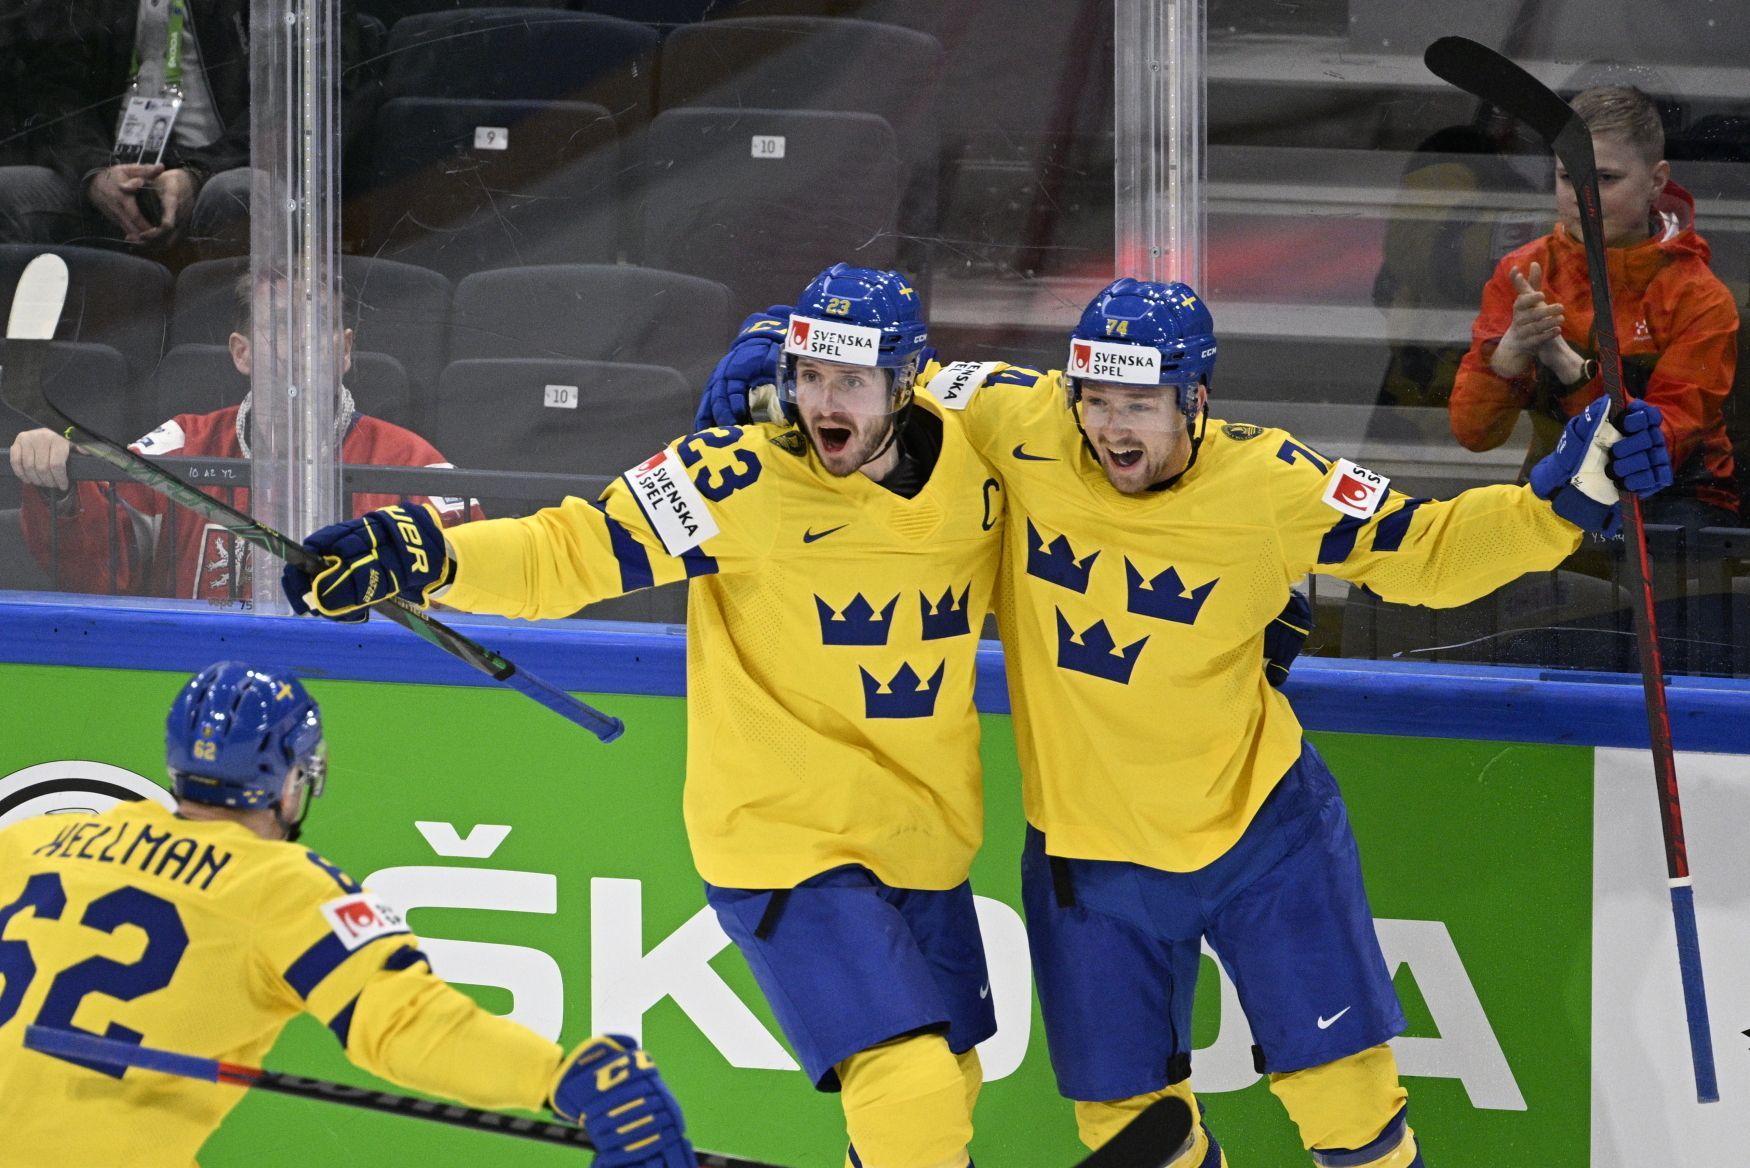 MS v hokeji 2022: Švédští hokejisté slaví gól proti českému týmu